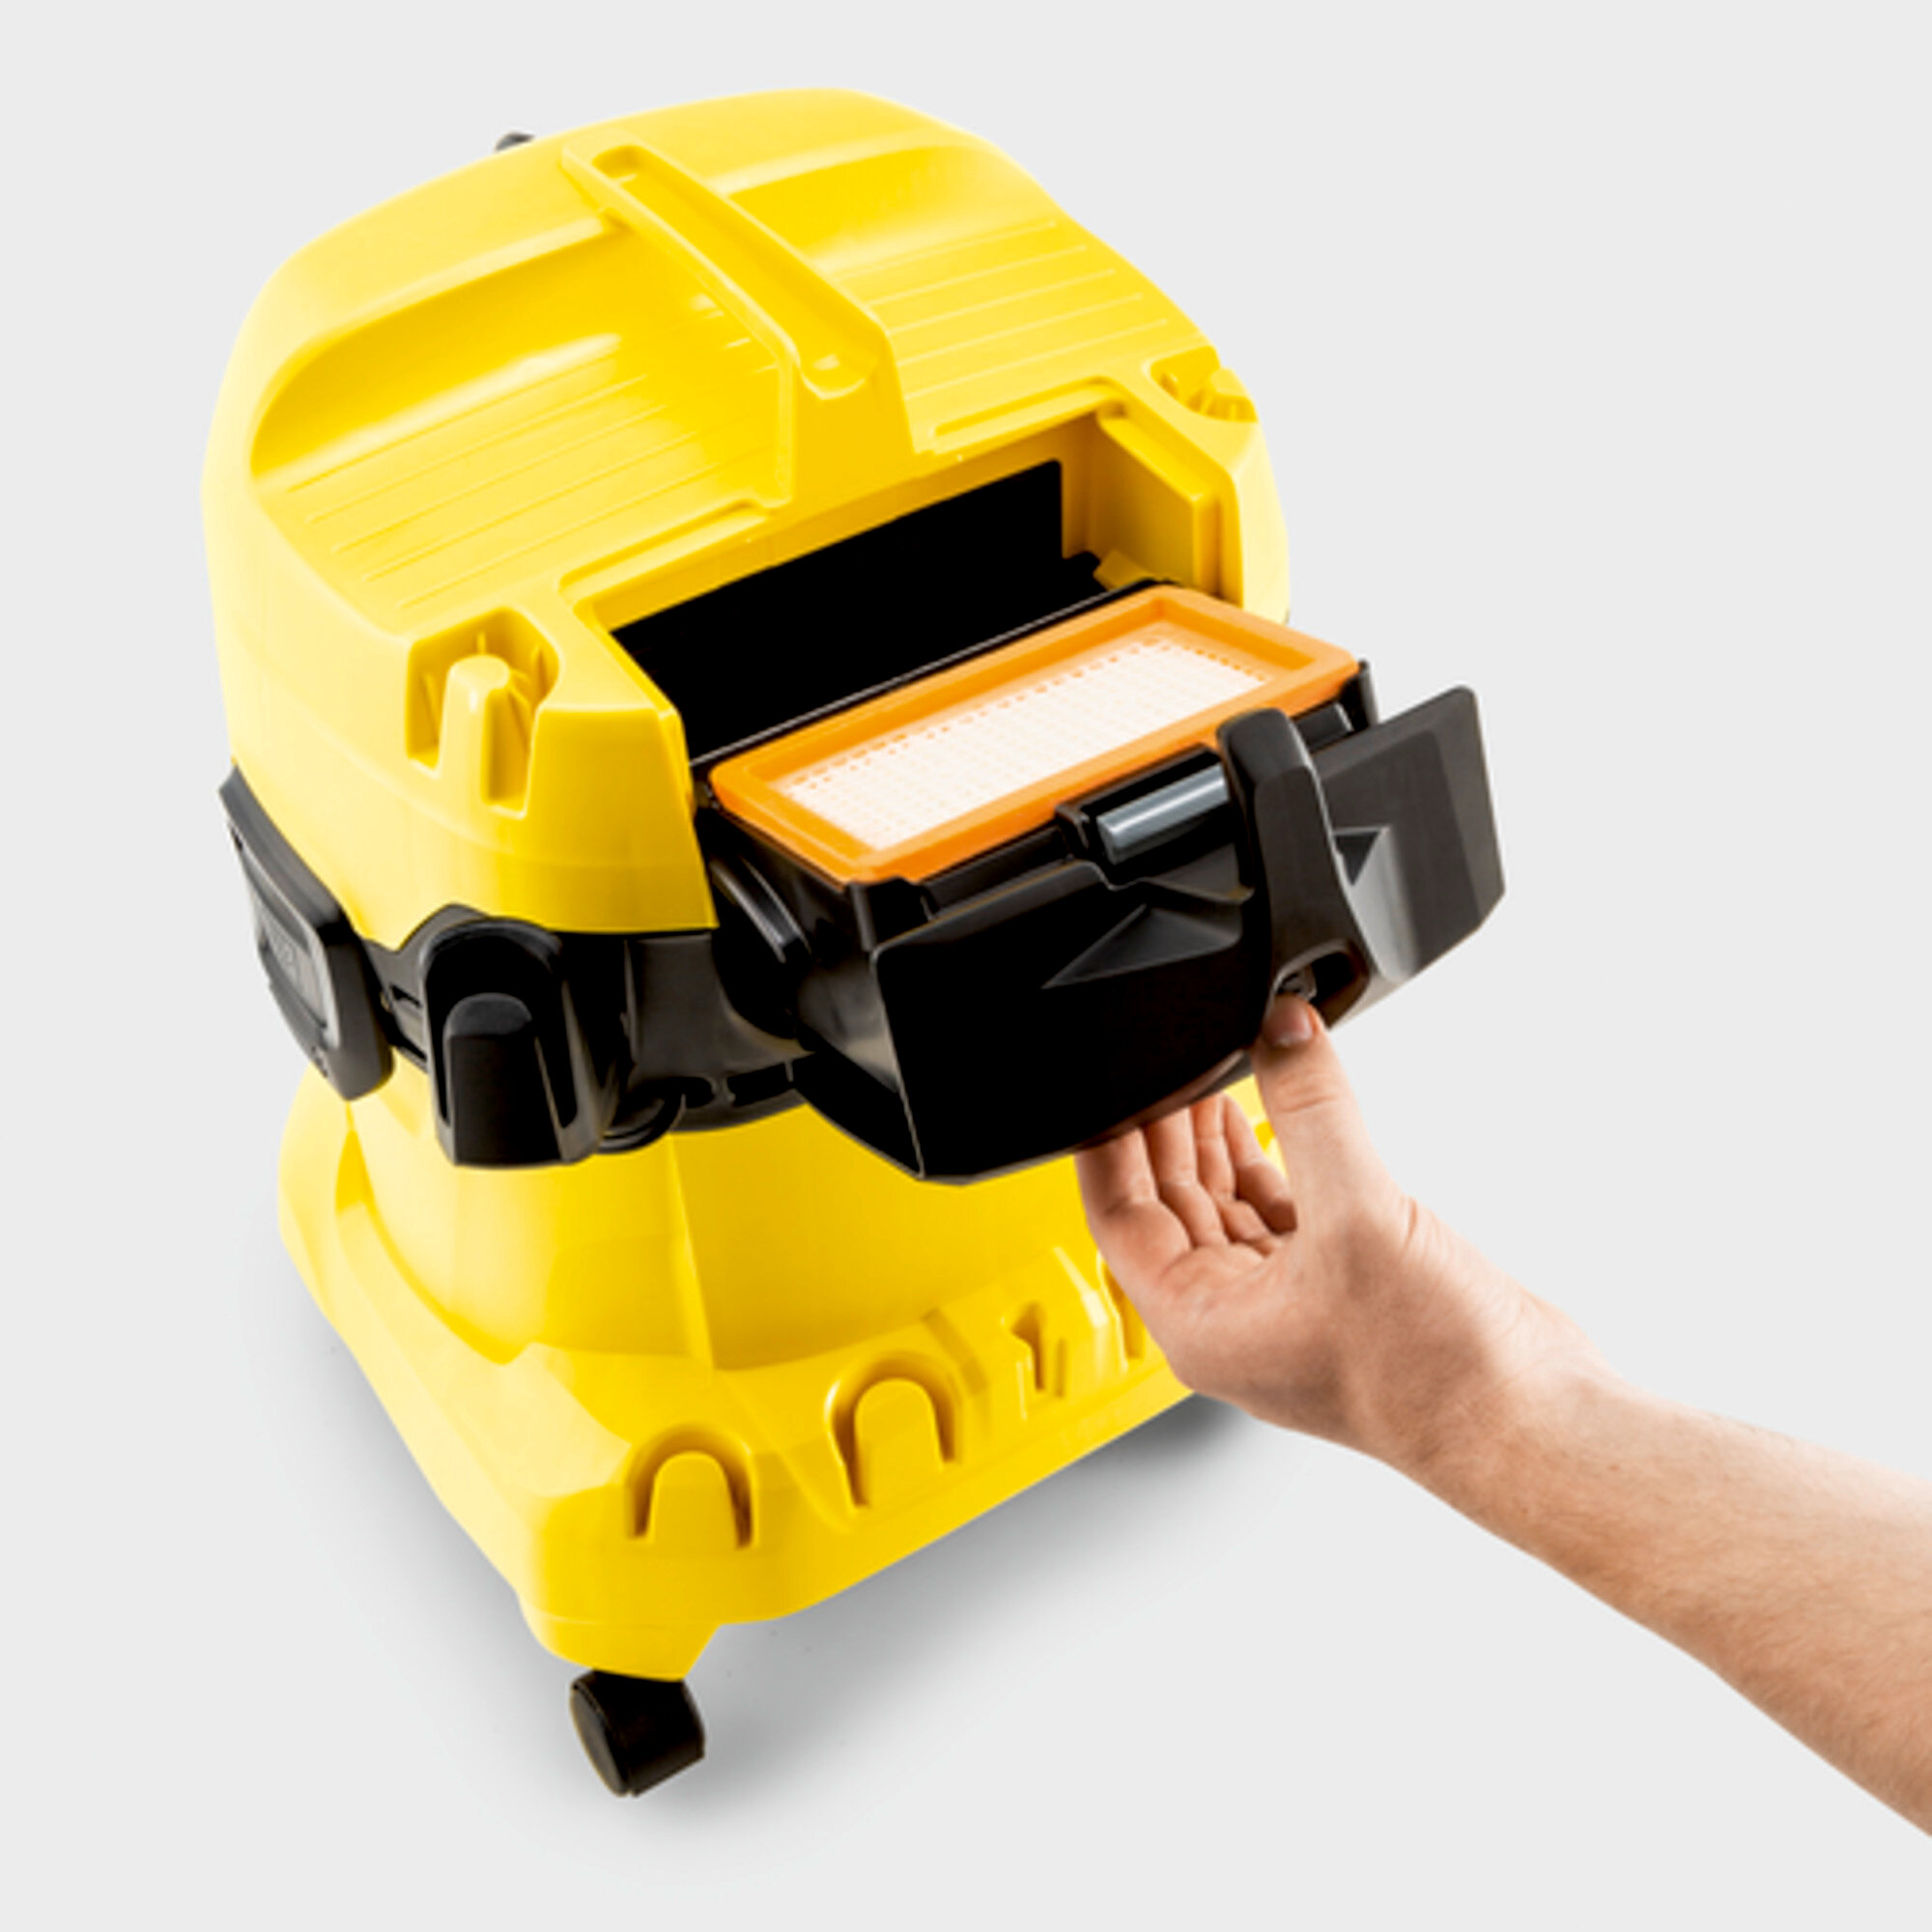 Víceúčelový vysavač WD 4 Car: Patentovaná technika odnímání filtru